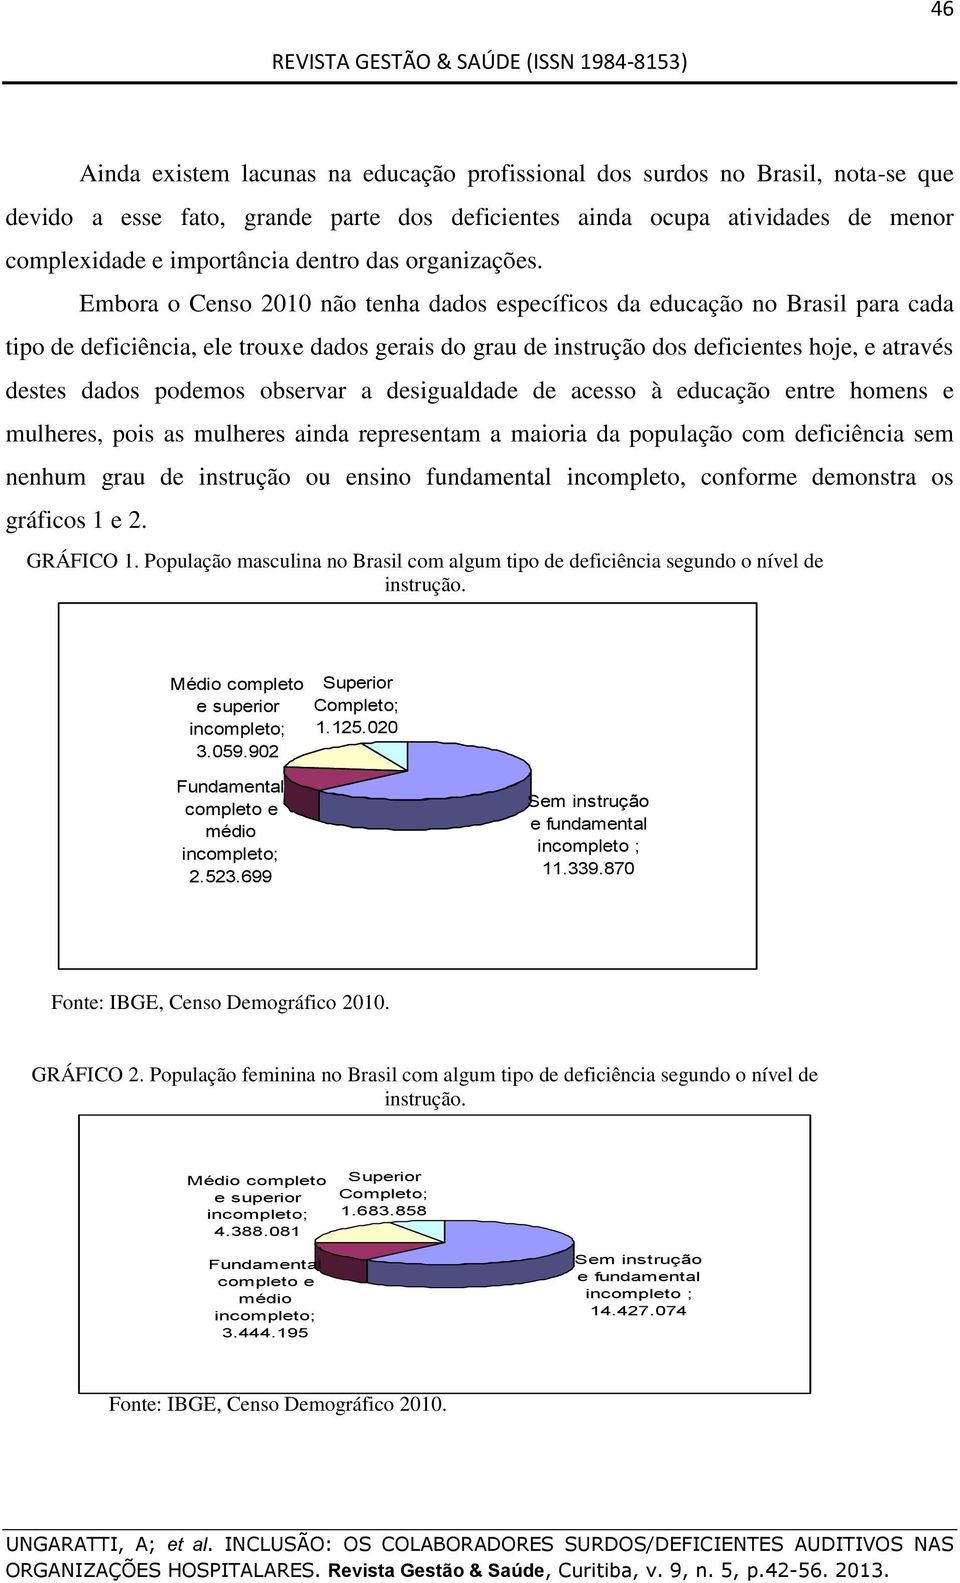 Embora o Censo 2010 não tenha dados específicos da educação no Brasil para cada tipo de deficiência, ele trouxe dados gerais do grau de instrução dos deficientes hoje, e através destes dados podemos